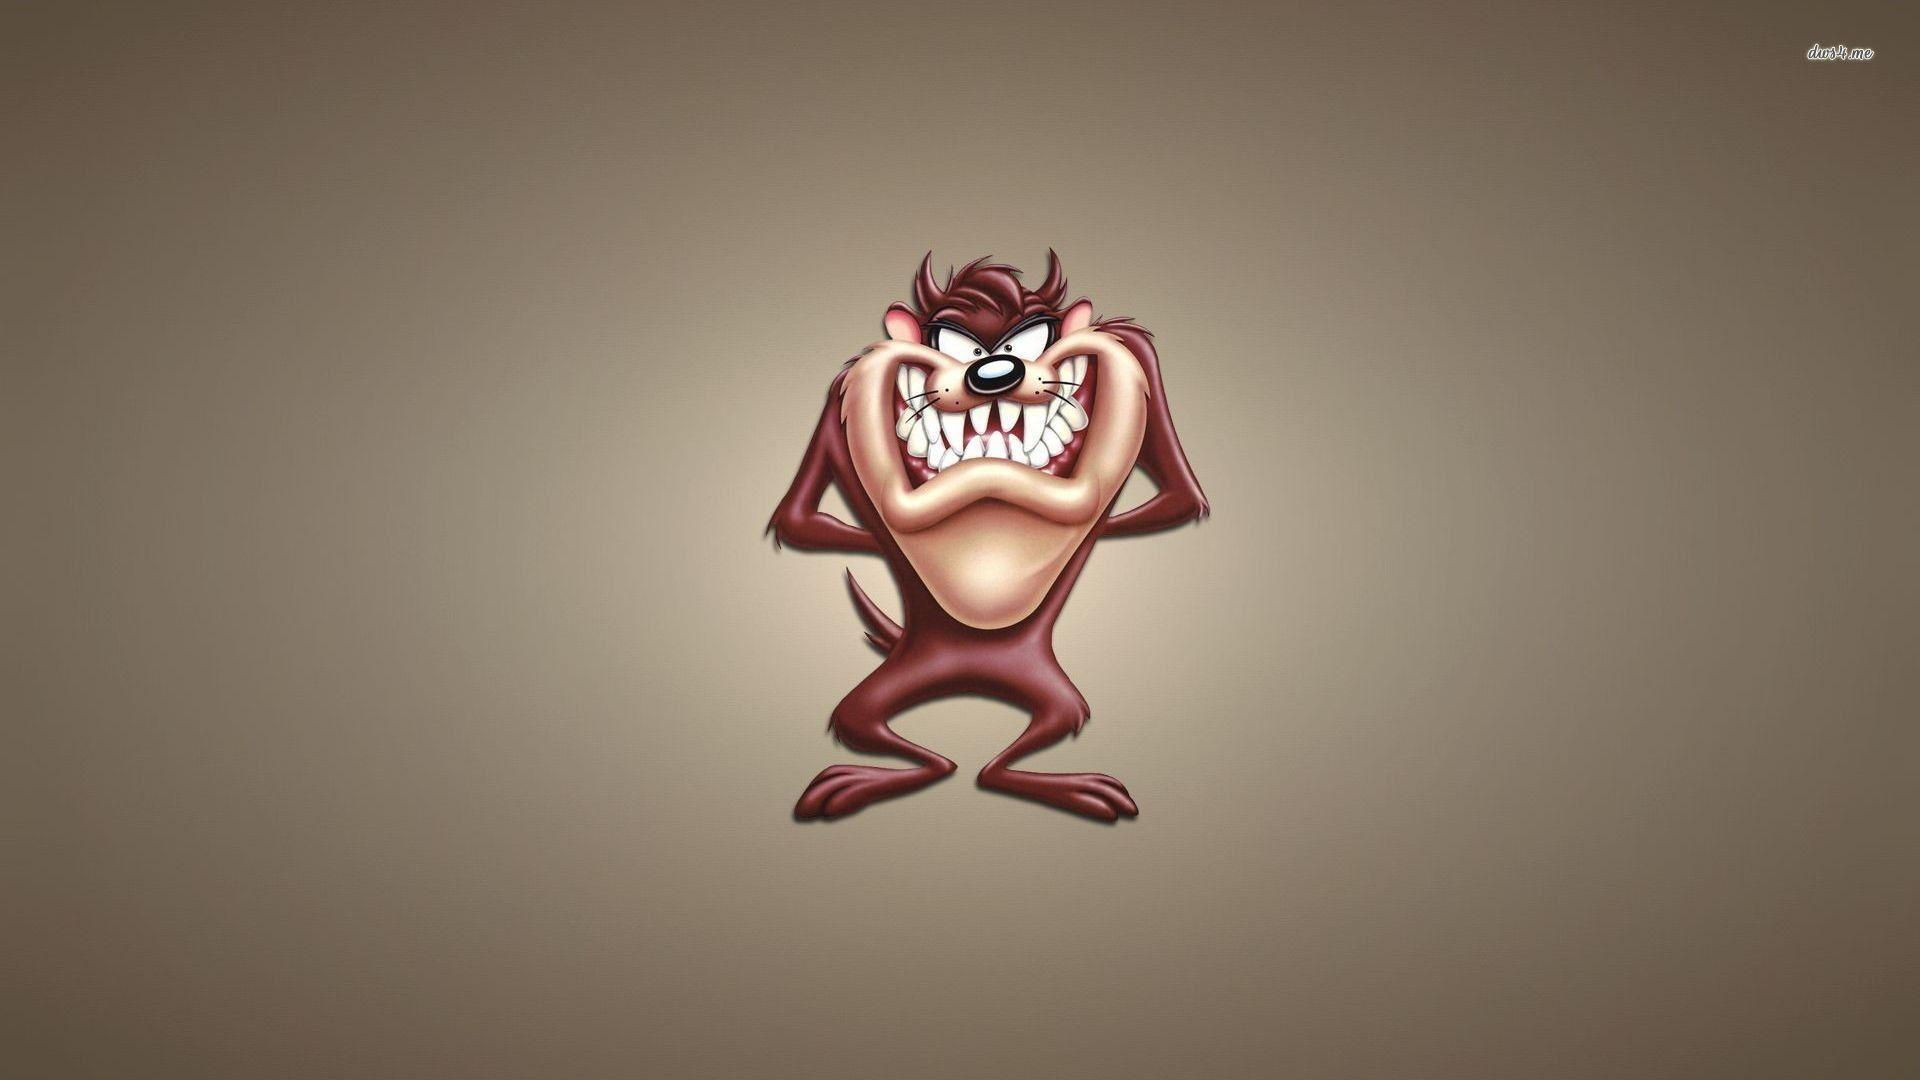 Tazmania cartoon character 2K wallpaper download